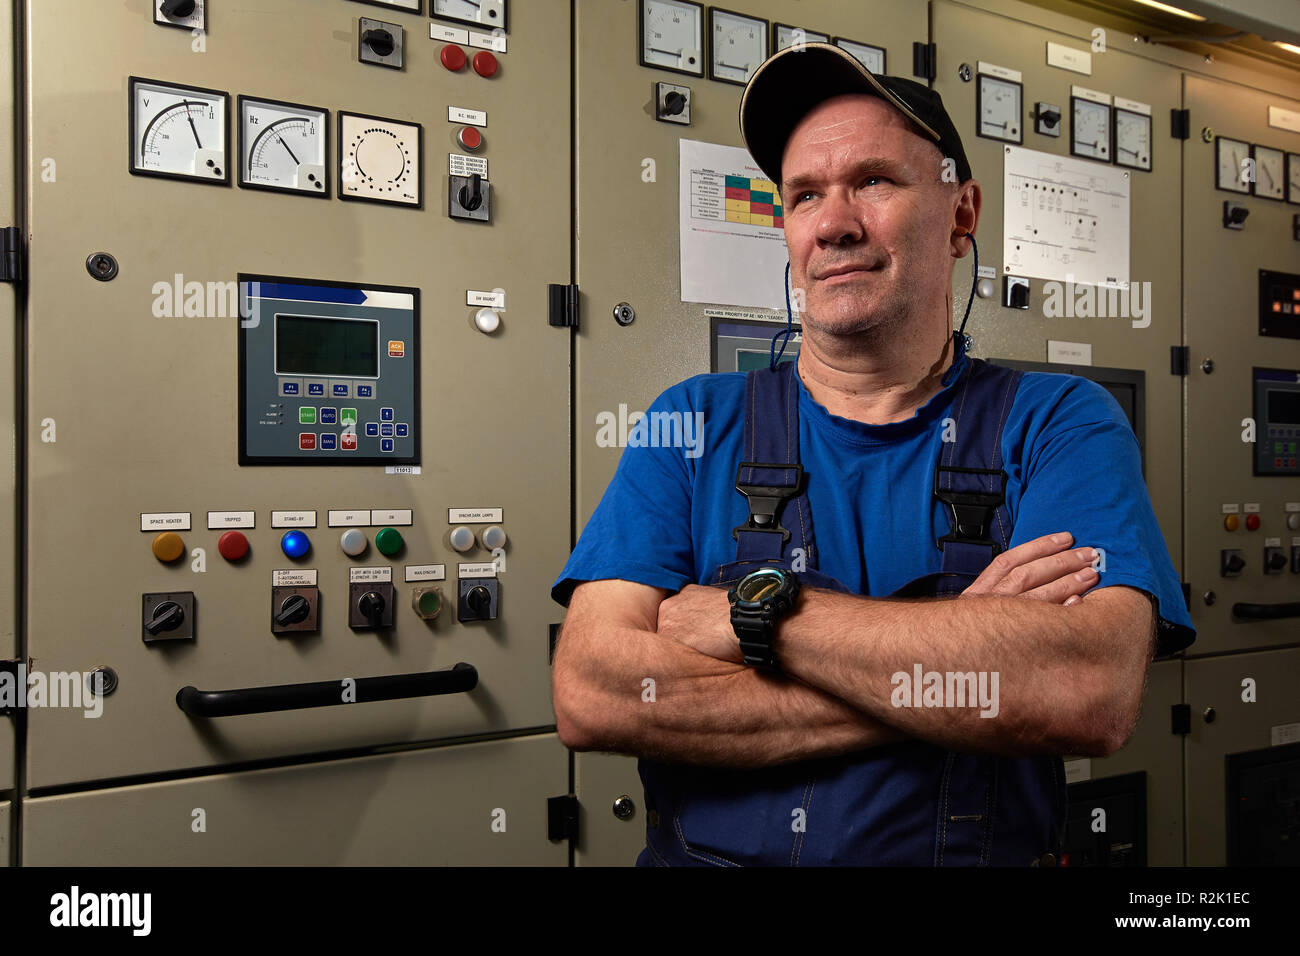 Fier et heureux / mécanicien chef mécanicien, qui posent avec les bras croisés, souriant, enfilé en uniforme dans la salle des machines d'un navire de charge. Banque D'Images